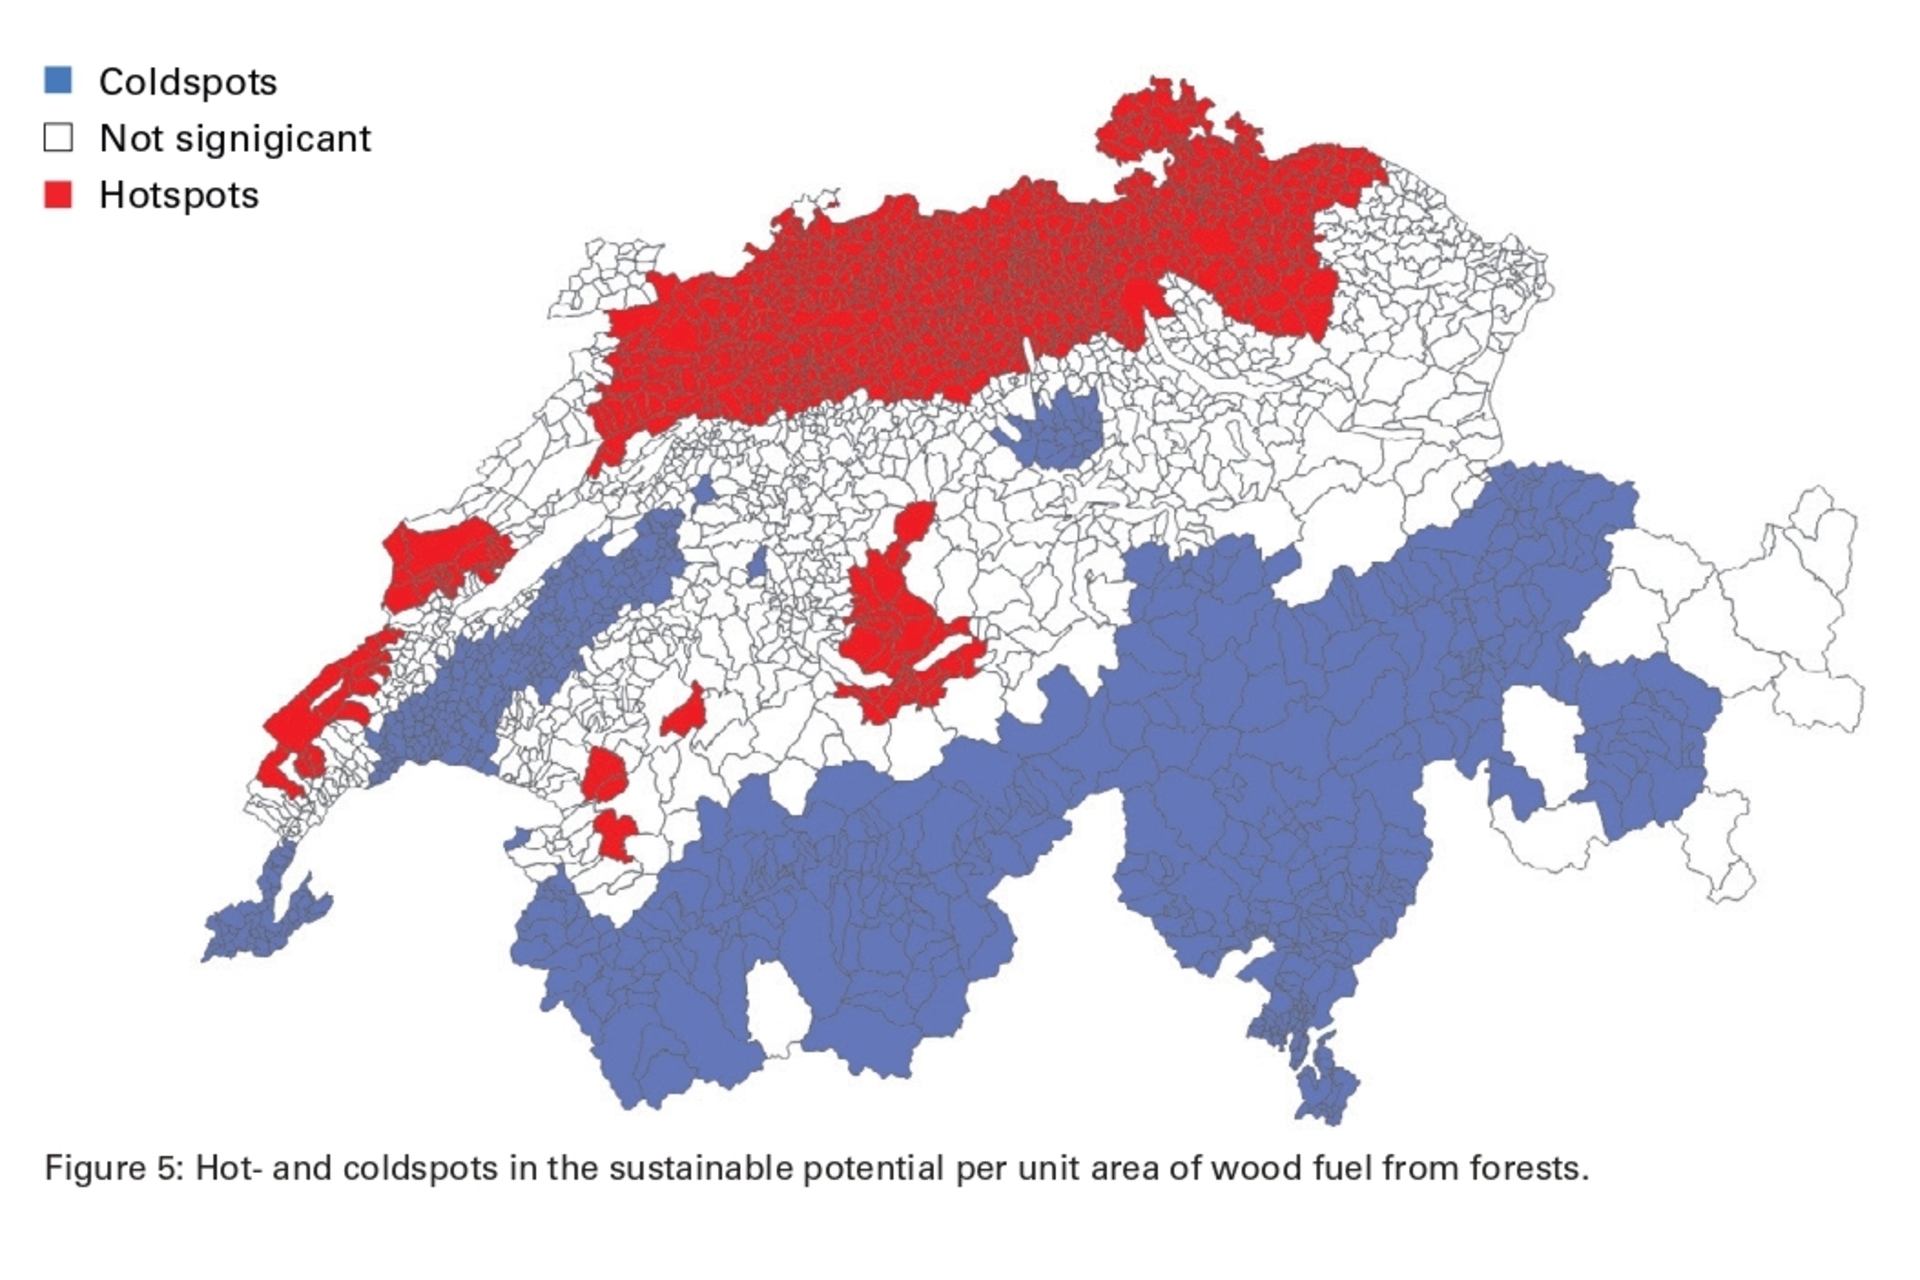 Legno: punti critici e punti deboli nei potenziali sostenibili per unità di superficie del combustibile legnoso delle foreste in Svizzera